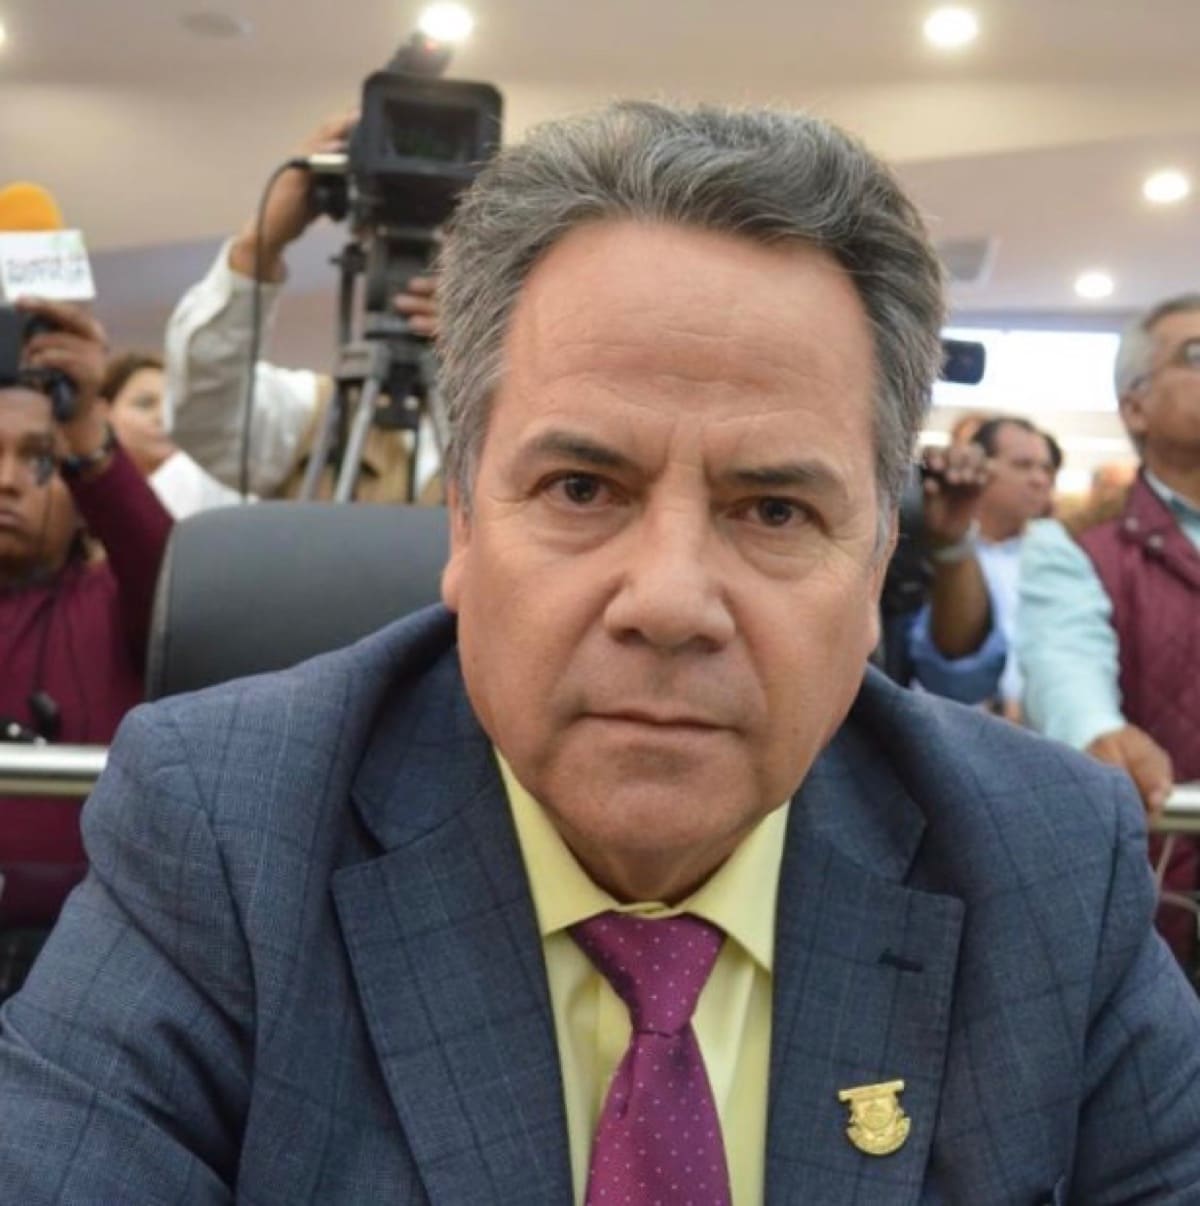 Piden al congreso reasignación presupuestal de 500 mdp: Ramiro Ruíz